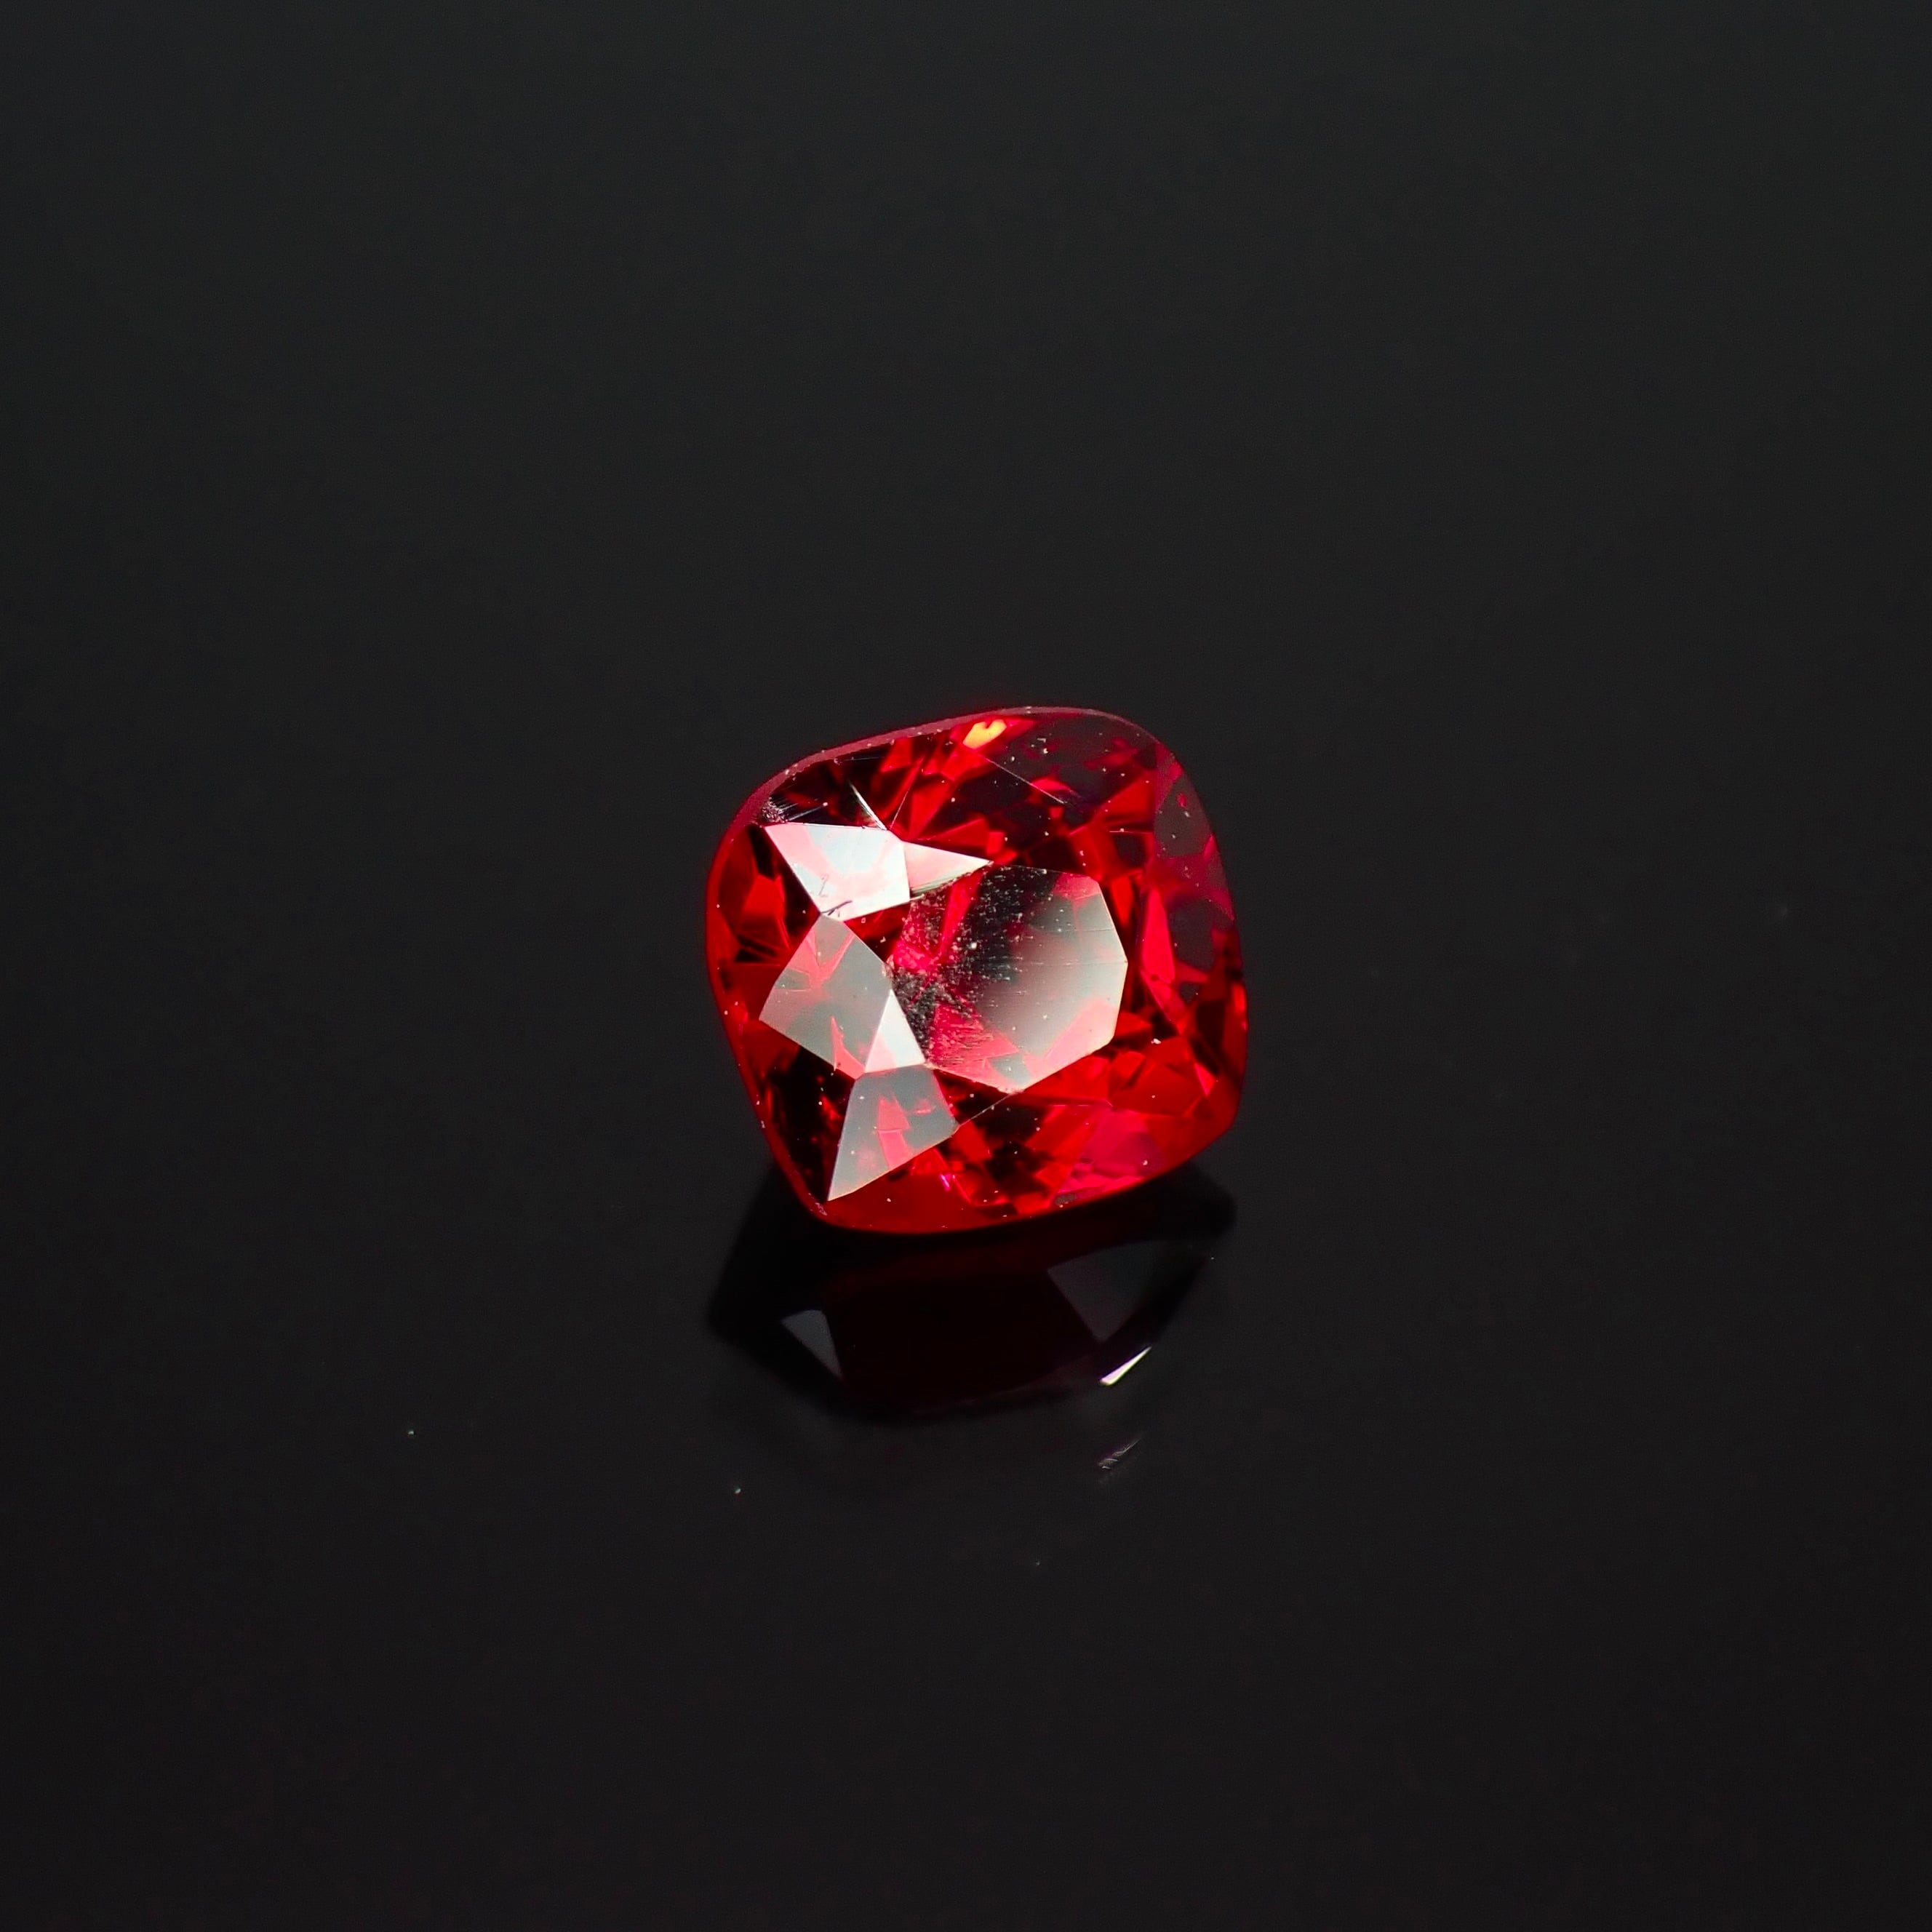 生命力溢れる深紅の宝石 0.48ct 天然 レッドスピネル | Frederick’s Gems&Jewelry powered by BASE